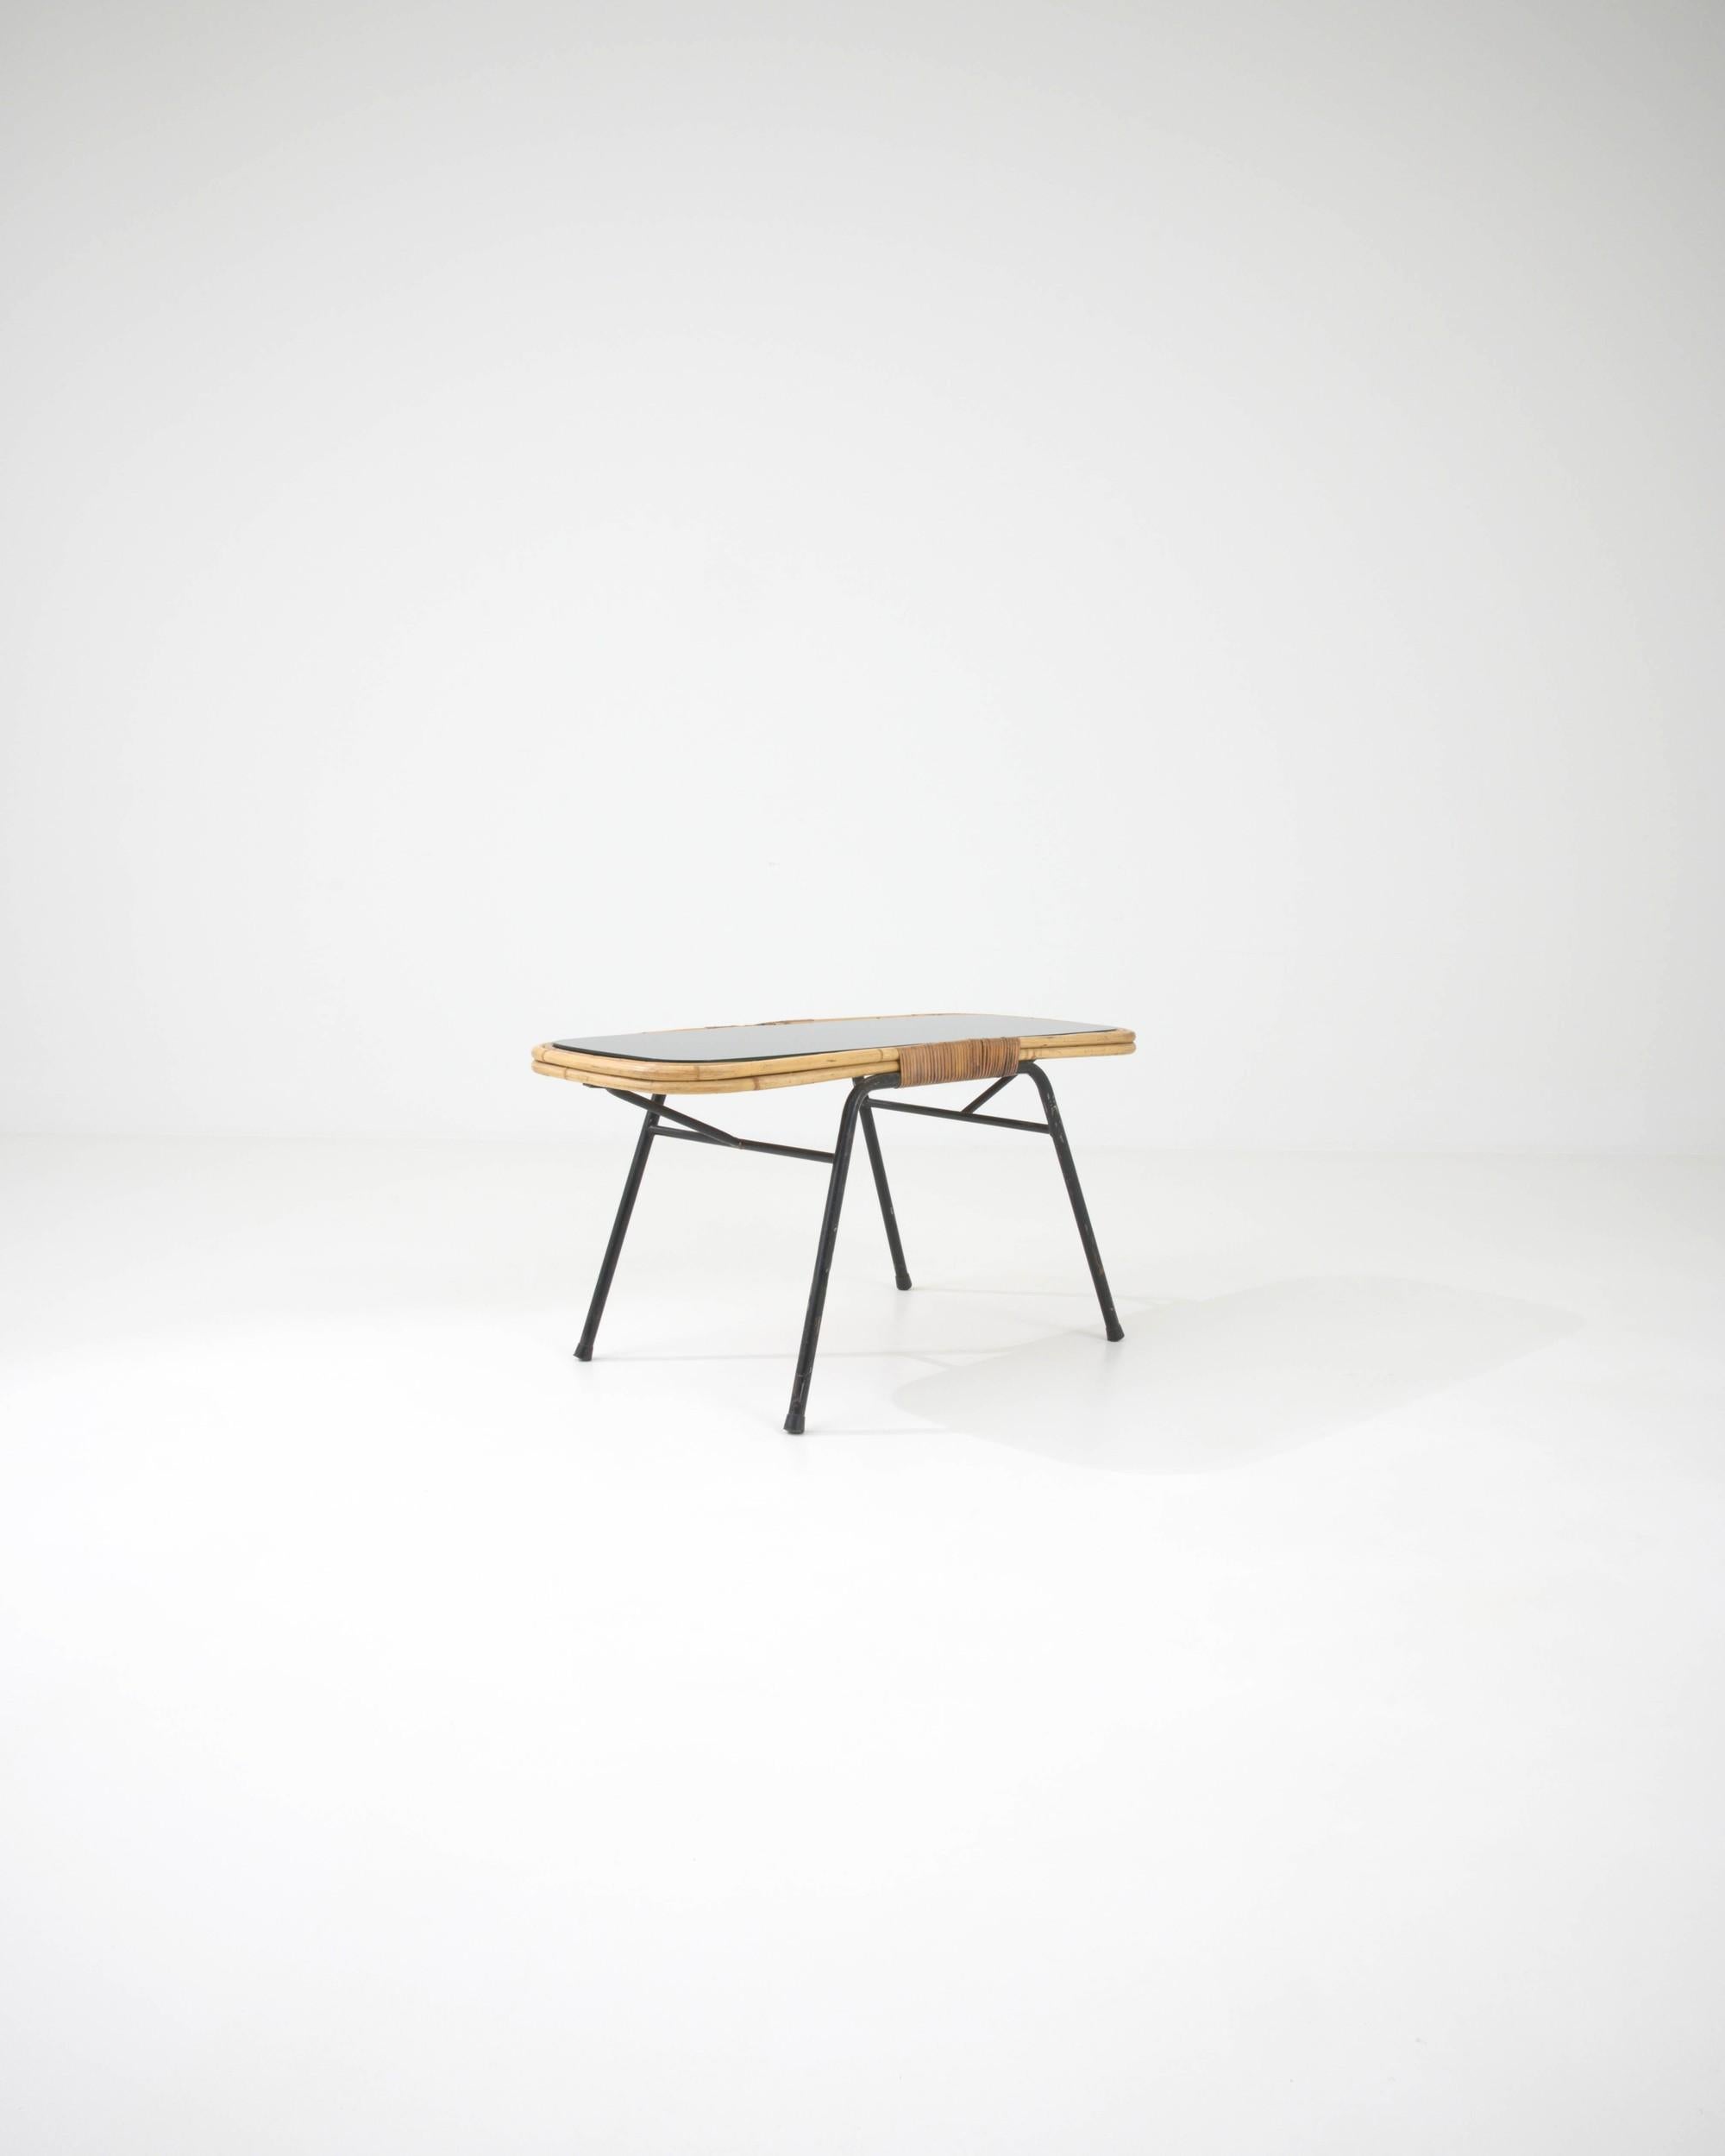 Cette table basse au design charmant du milieu du siècle a été fabriquée en France, vers 1960.  Créée en pliant des tiges de rotin en courbes et en arcs, cette petite table invite à réfléchir à sa délicieuse construction. Le rotin constitue un